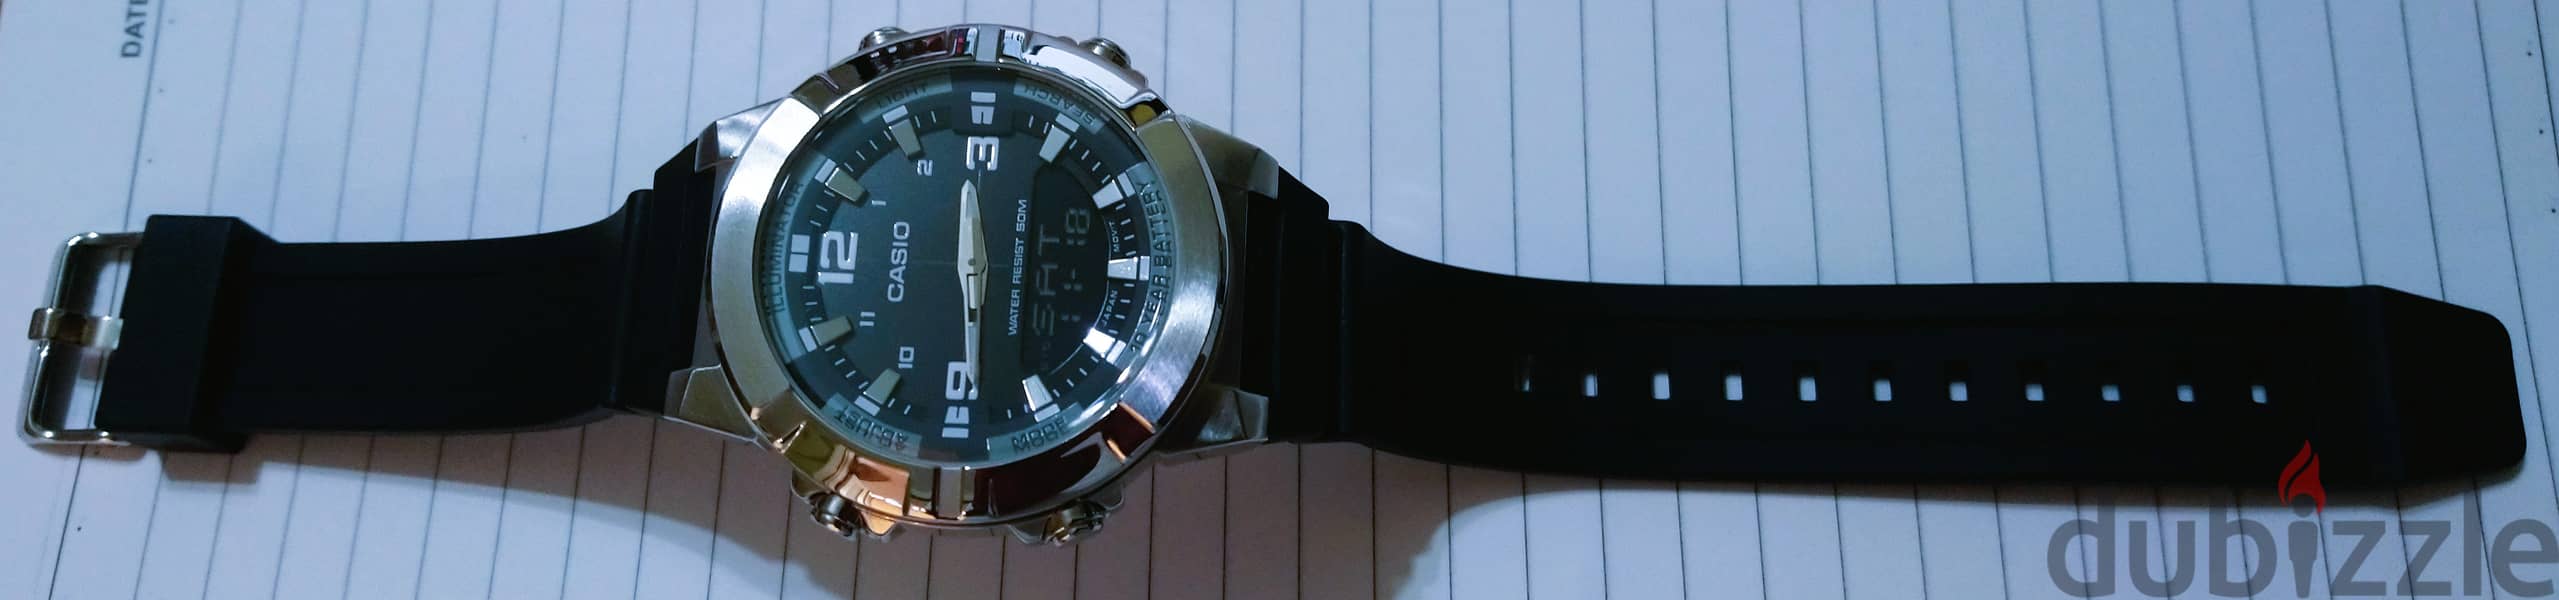 Casio watch awm870-1avdf analog + digital both in one، ساعه كاسيو 12